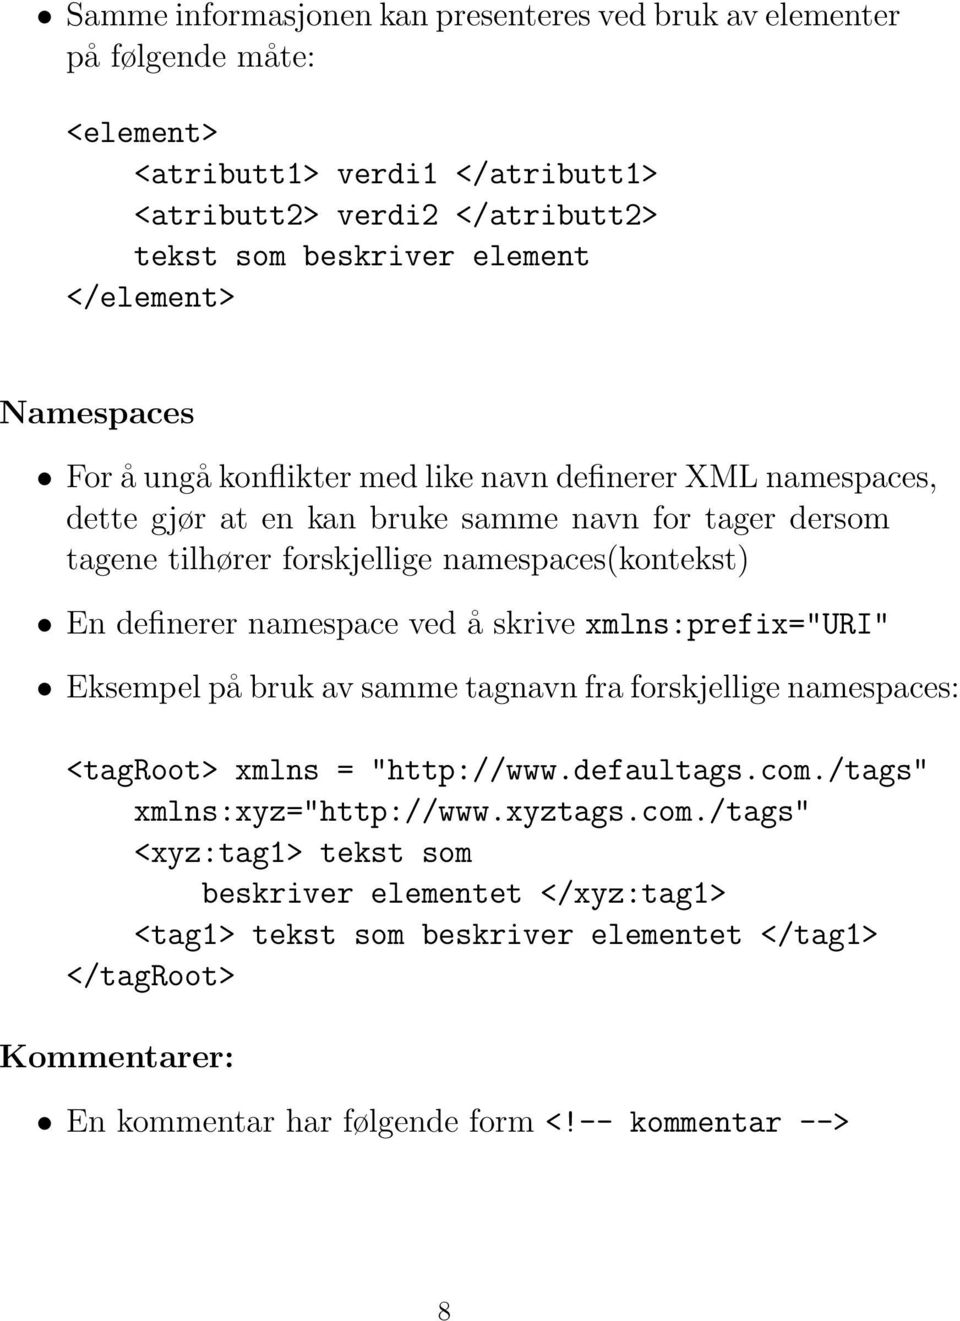 namespaces(kontekst) En definerer namespace ved å skrive xmlns:prefix="uri" Eksempel på bruk av samme tagnavn fra forskjellige namespaces: <tagroot> xmlns = "http://www.defaultags.com.